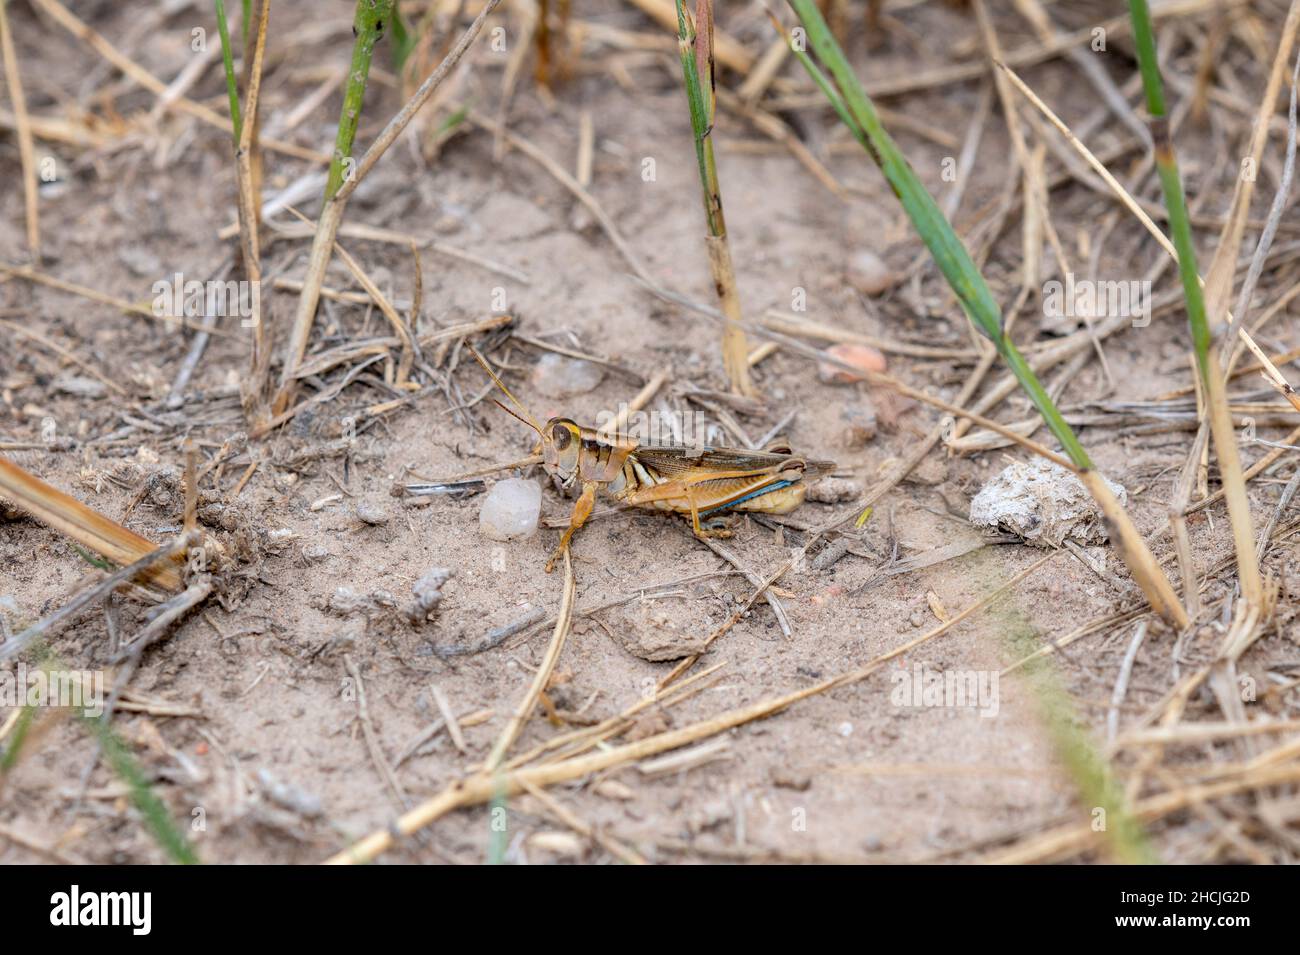 A Packard's Grasshopper (Melanoplus packardii) encaramado en el suelo sobre la vegetación seca Foto de stock